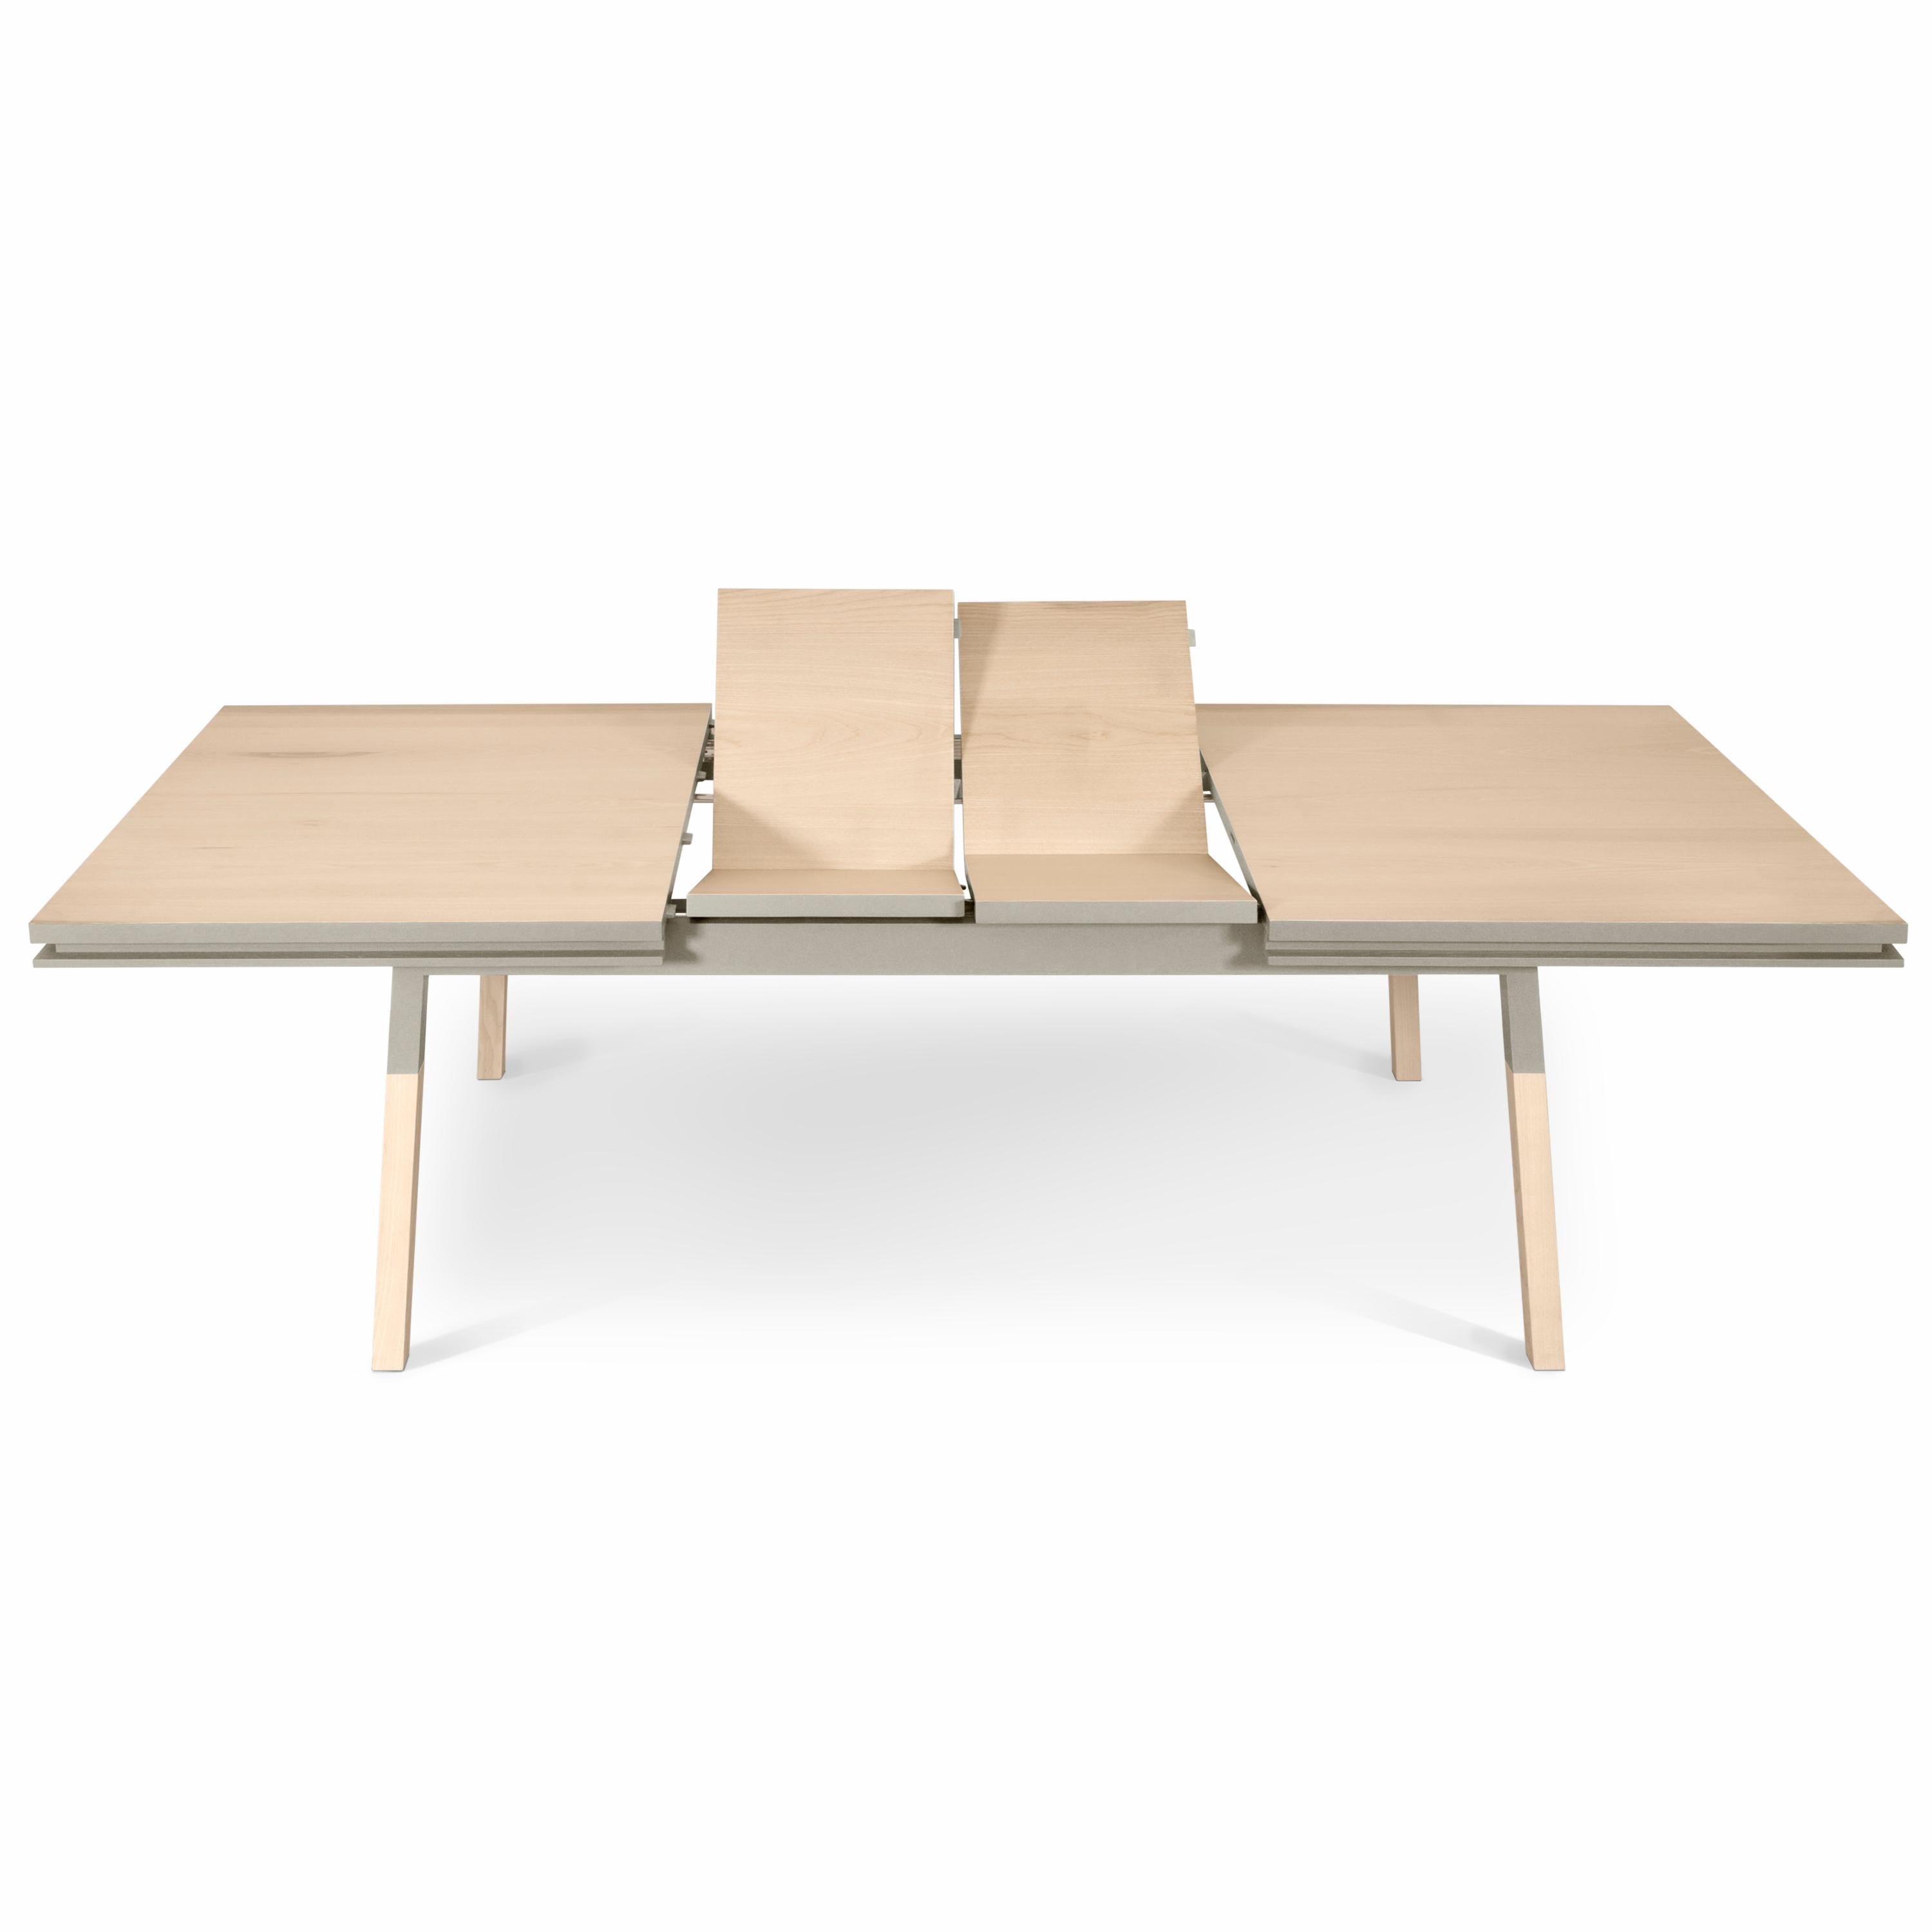 Cette table de salle à manger rectangulaire est proposée avec 2 extensions intégrées et repliées. 

Il est fabriqué en bois de frêne 100% massif provenant de forêts françaises gérées durablement et certifiées PEFC.

Les 3 longueurs sont 160 cm / 63